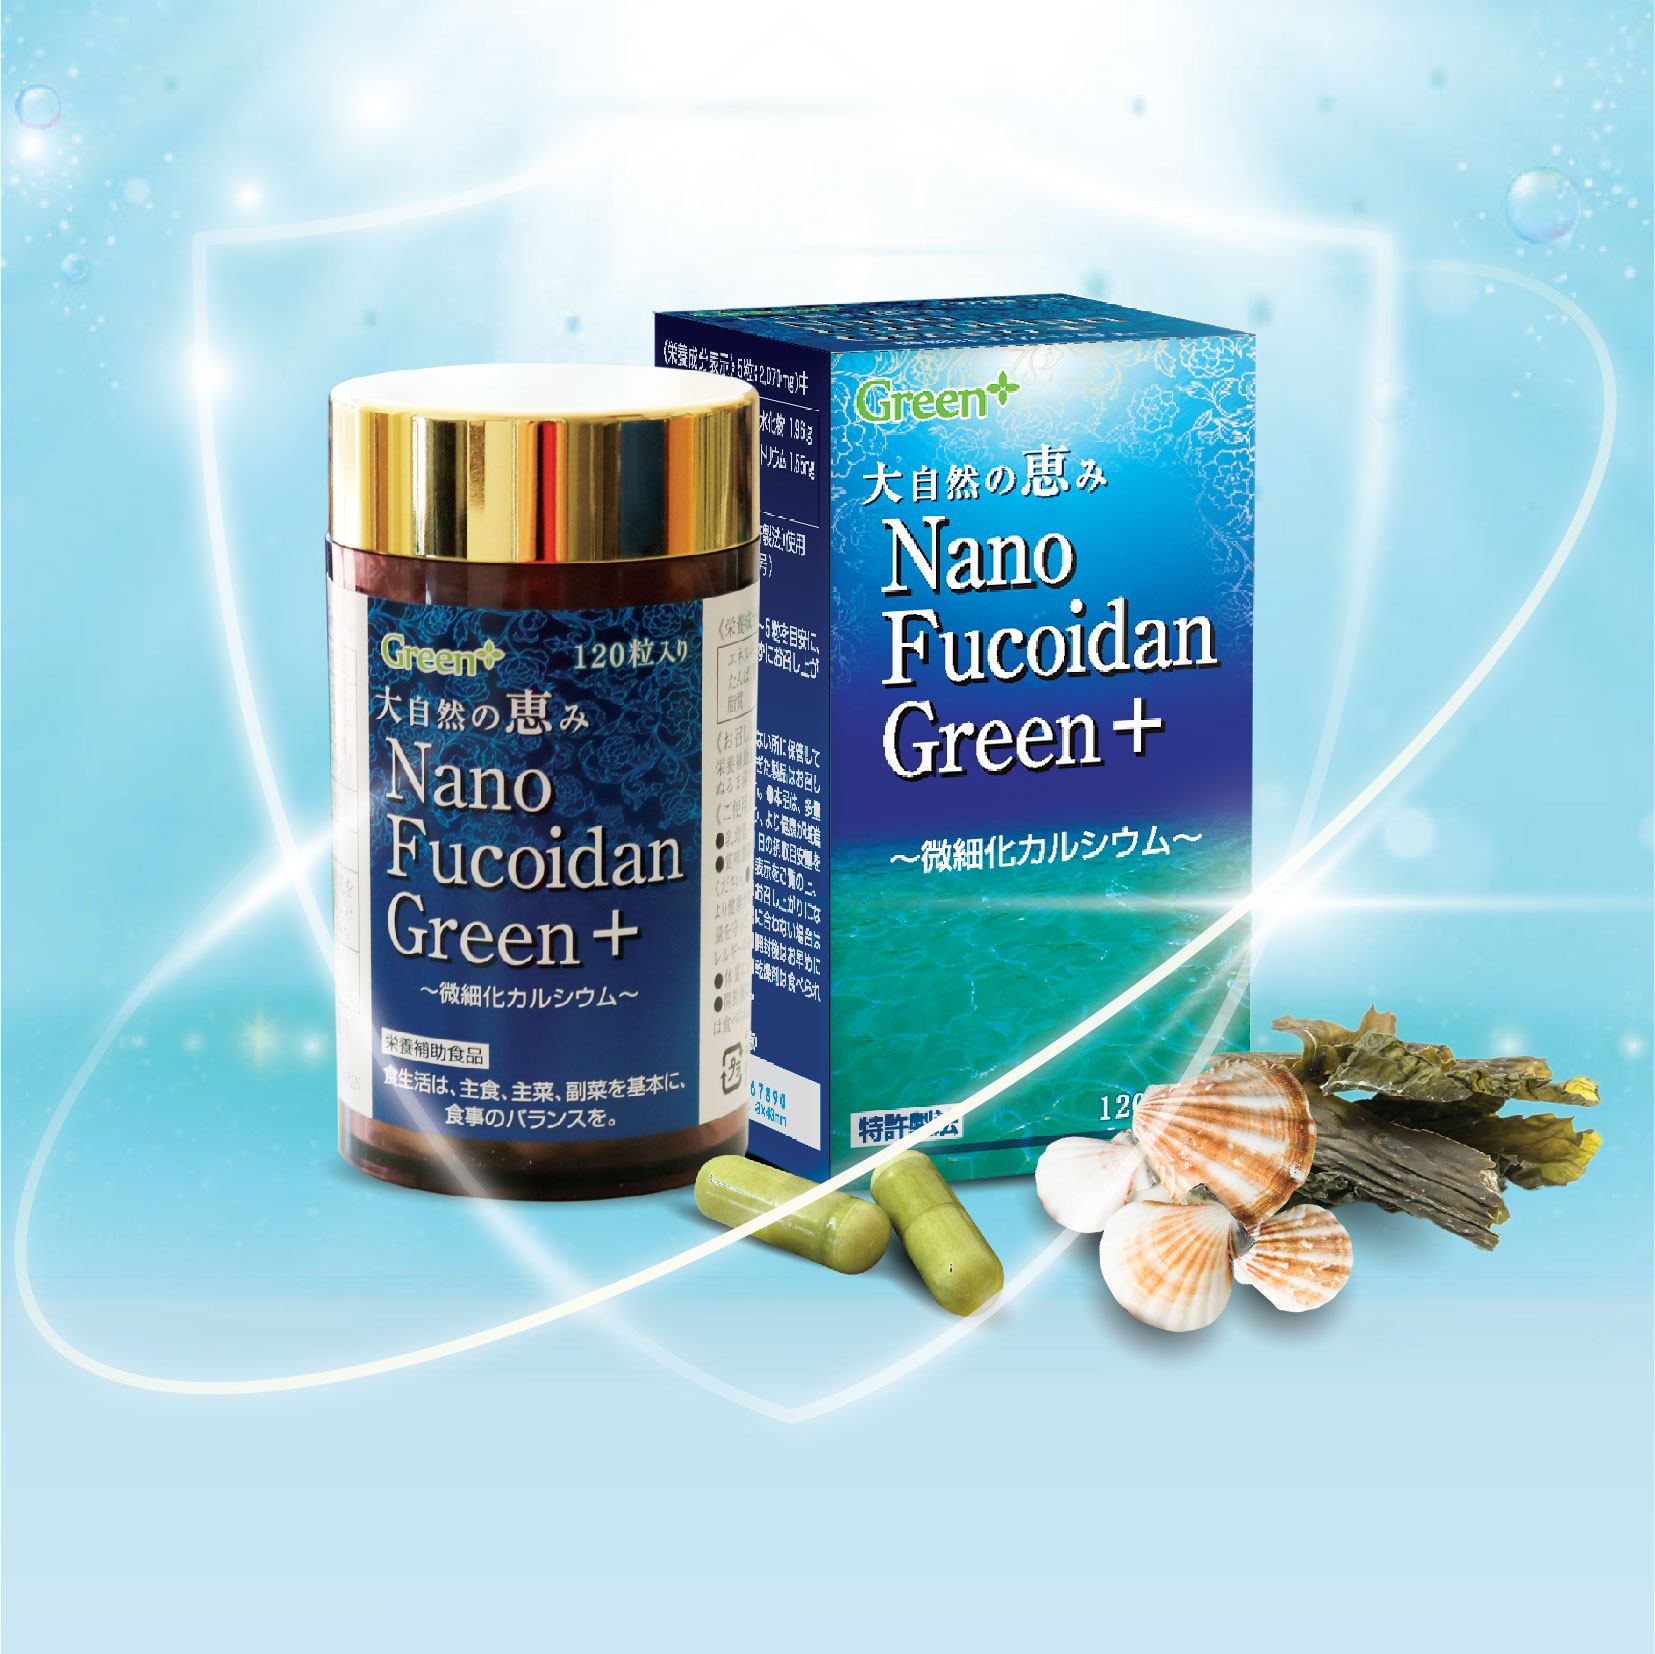 Viên uống tăng cường sức đề kháng, hỗ trợ ngăn ngừa ung thư - Nano Fucoidan Green+ Nhật Bản